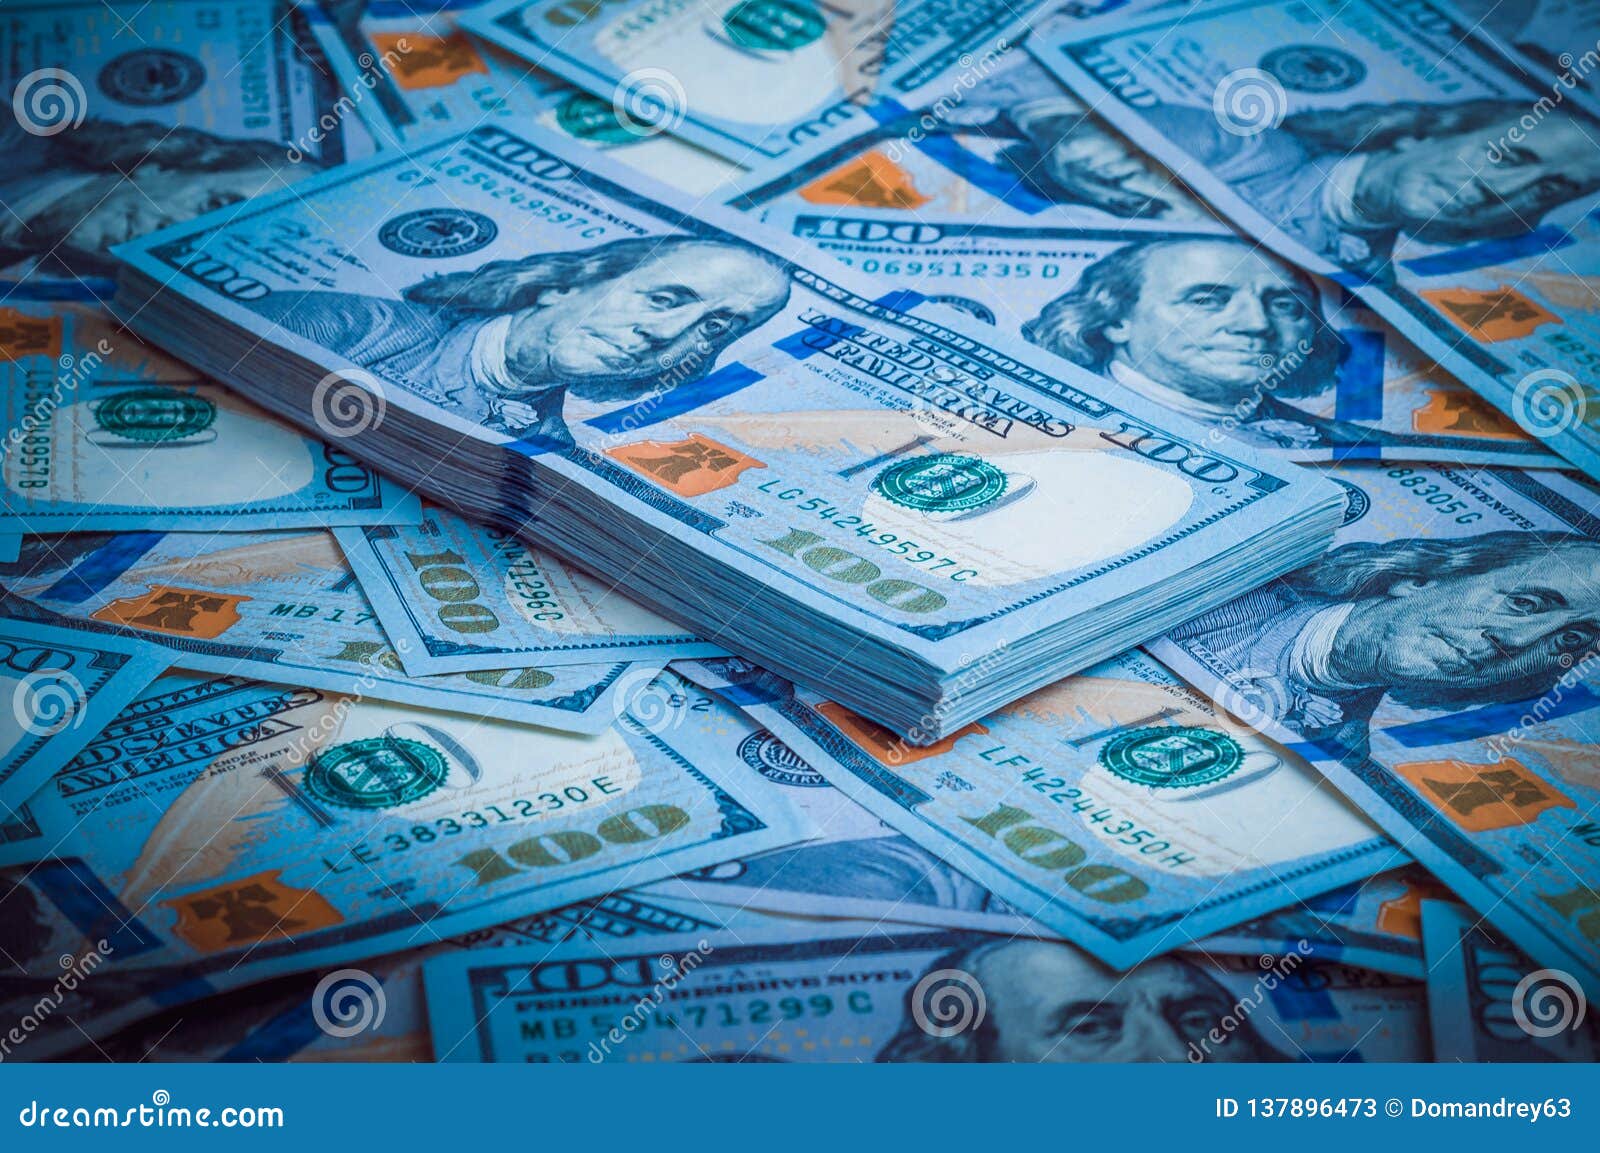 Disciplin Et bestemt Reskyd A Pack of American Dollars on the Background of Hundred Dollar Bills. Blue  Design Stock Image - Image of bills, finance: 137896473